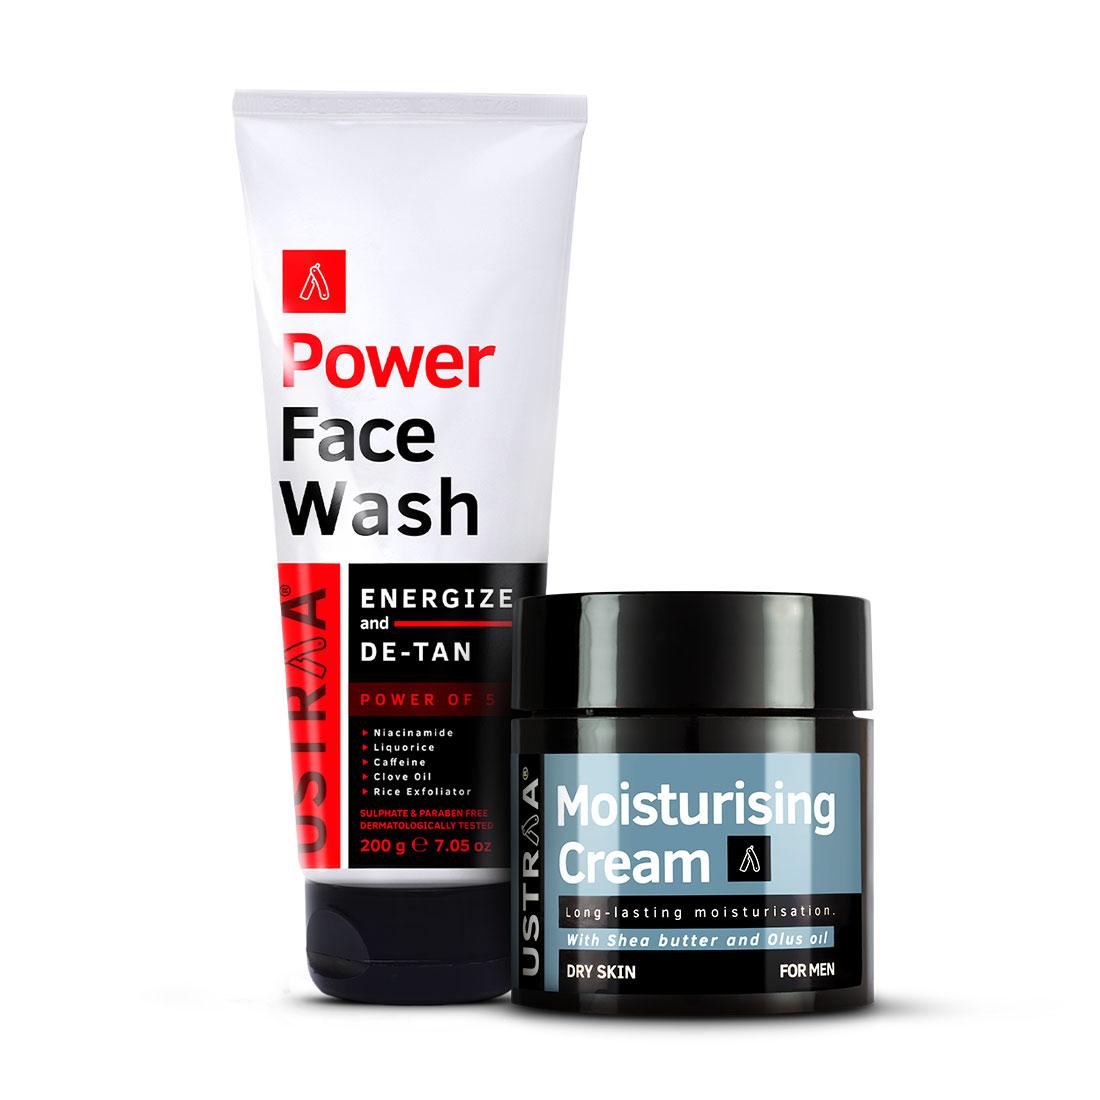 Power Face Wash Energize & Moisturizing Cream Dry Skin